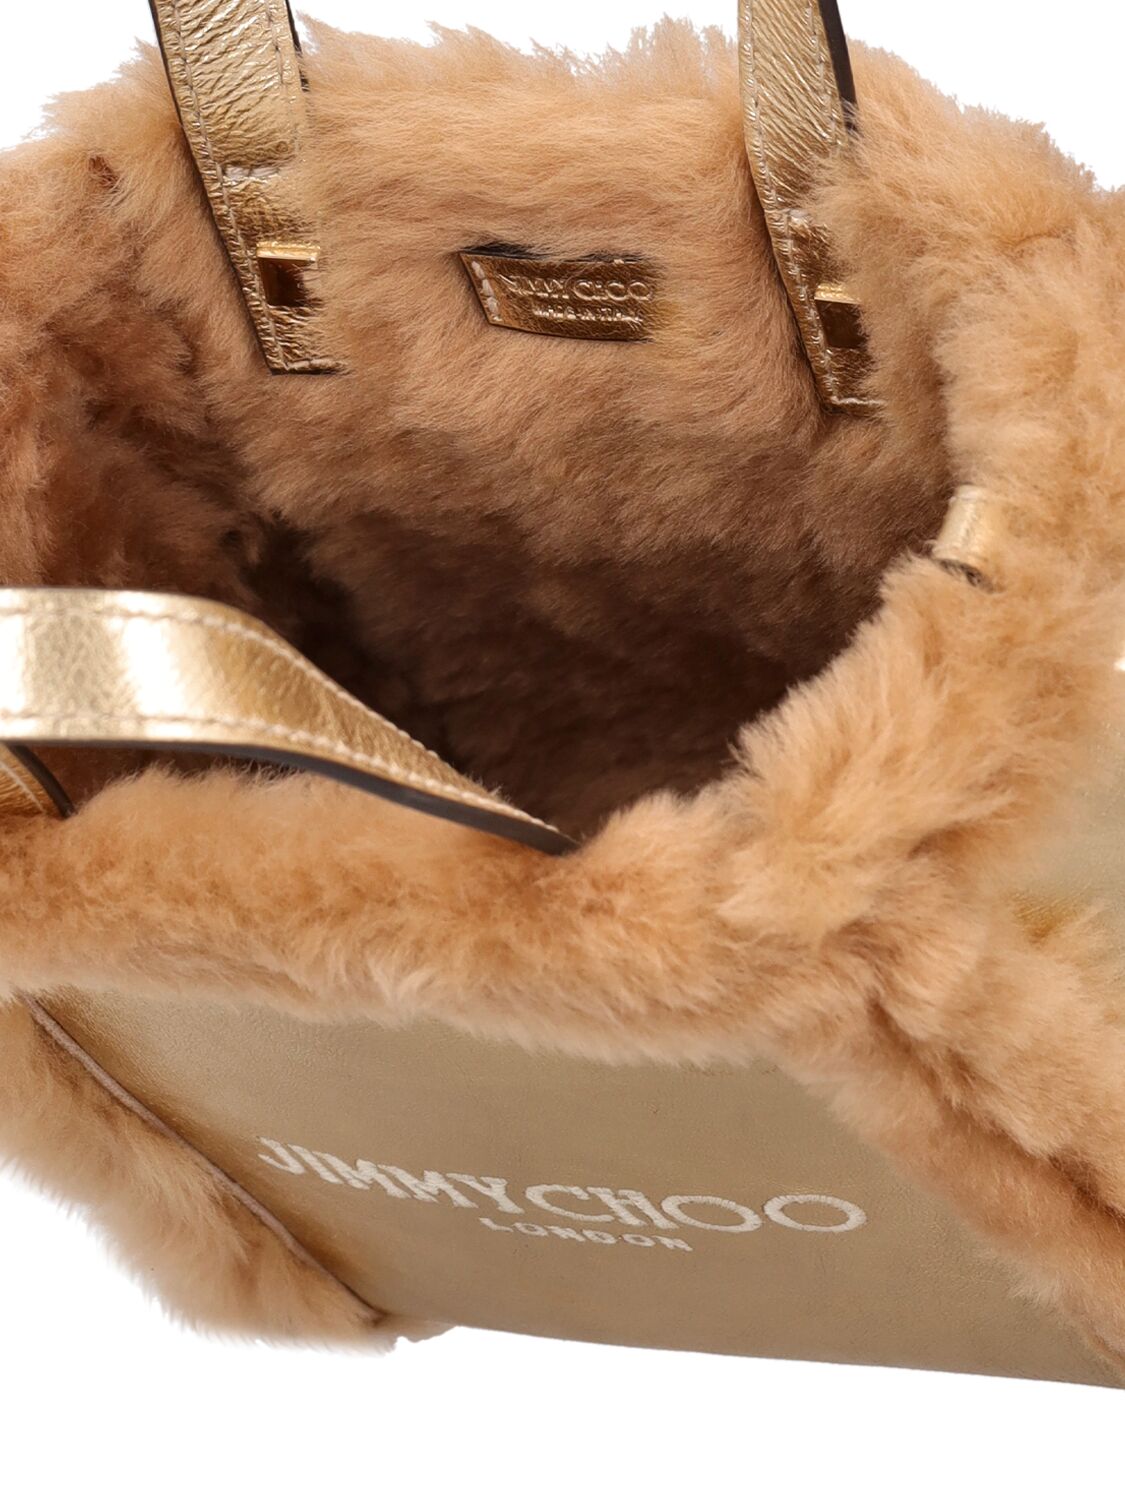 Shop Jimmy Choo Mini N/s Shearling Tote Bag In Gold,caramel